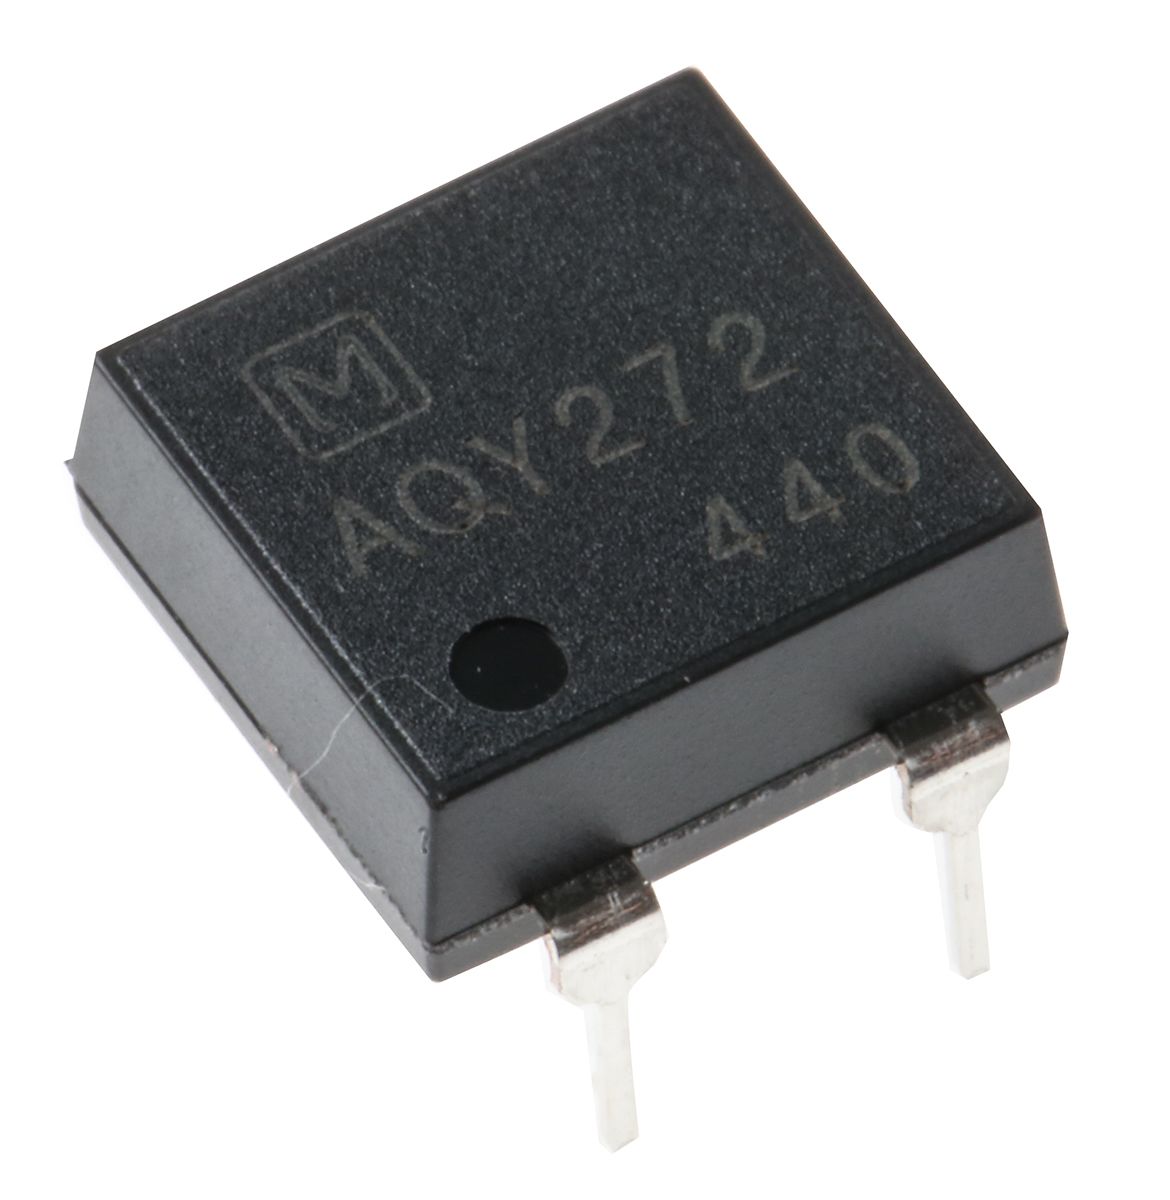 Panasonic, AQY272 DC Input MOSFET Output Optocoupler, Through Hole, 4-Pin DIP